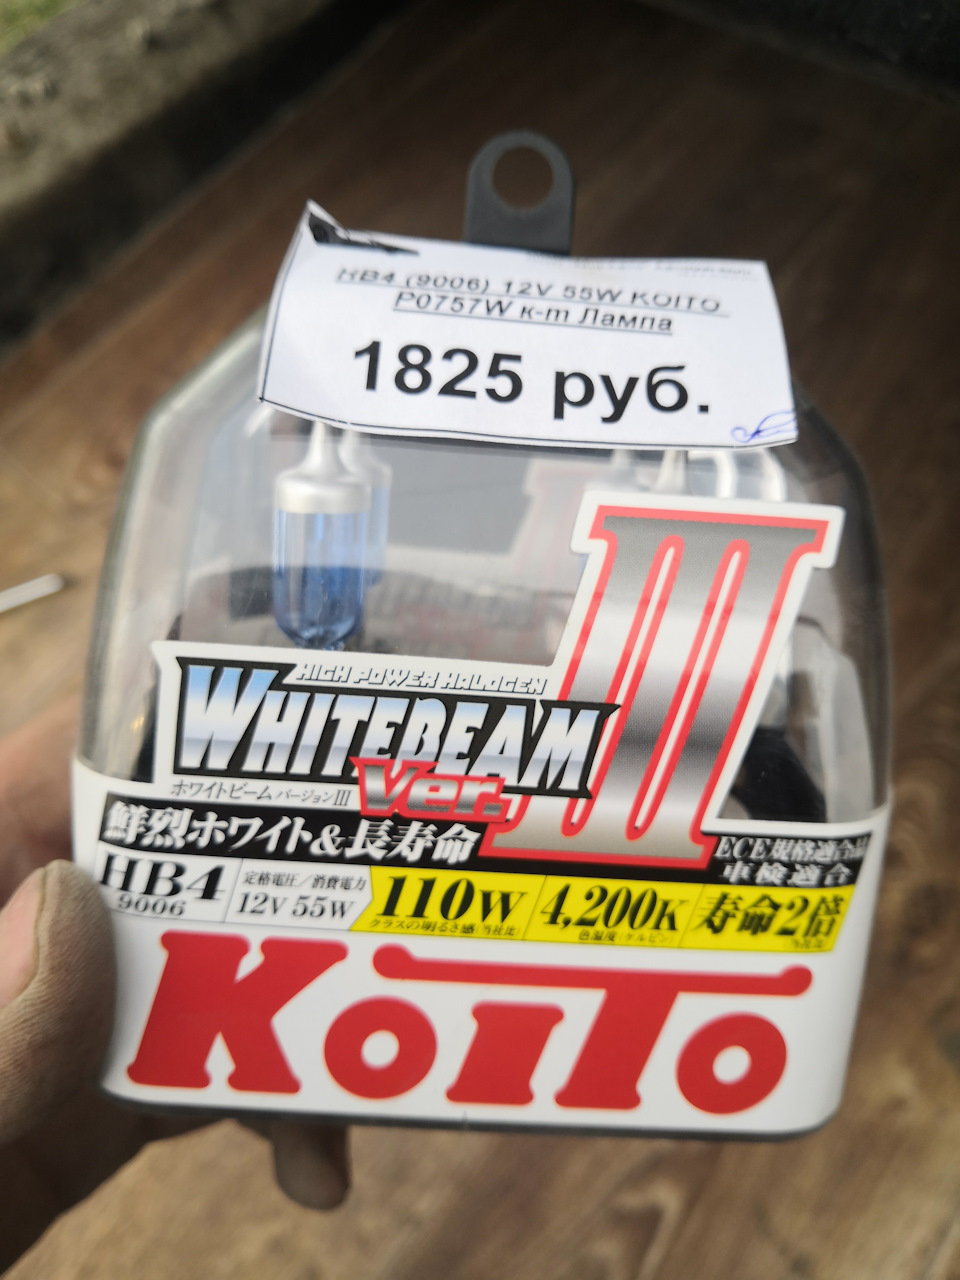 Koito Whitebeam 4200k drive2. Koito hb4 желтые. Koito p0757w 100. Тойота който. Koito whitebeam 12v 55w